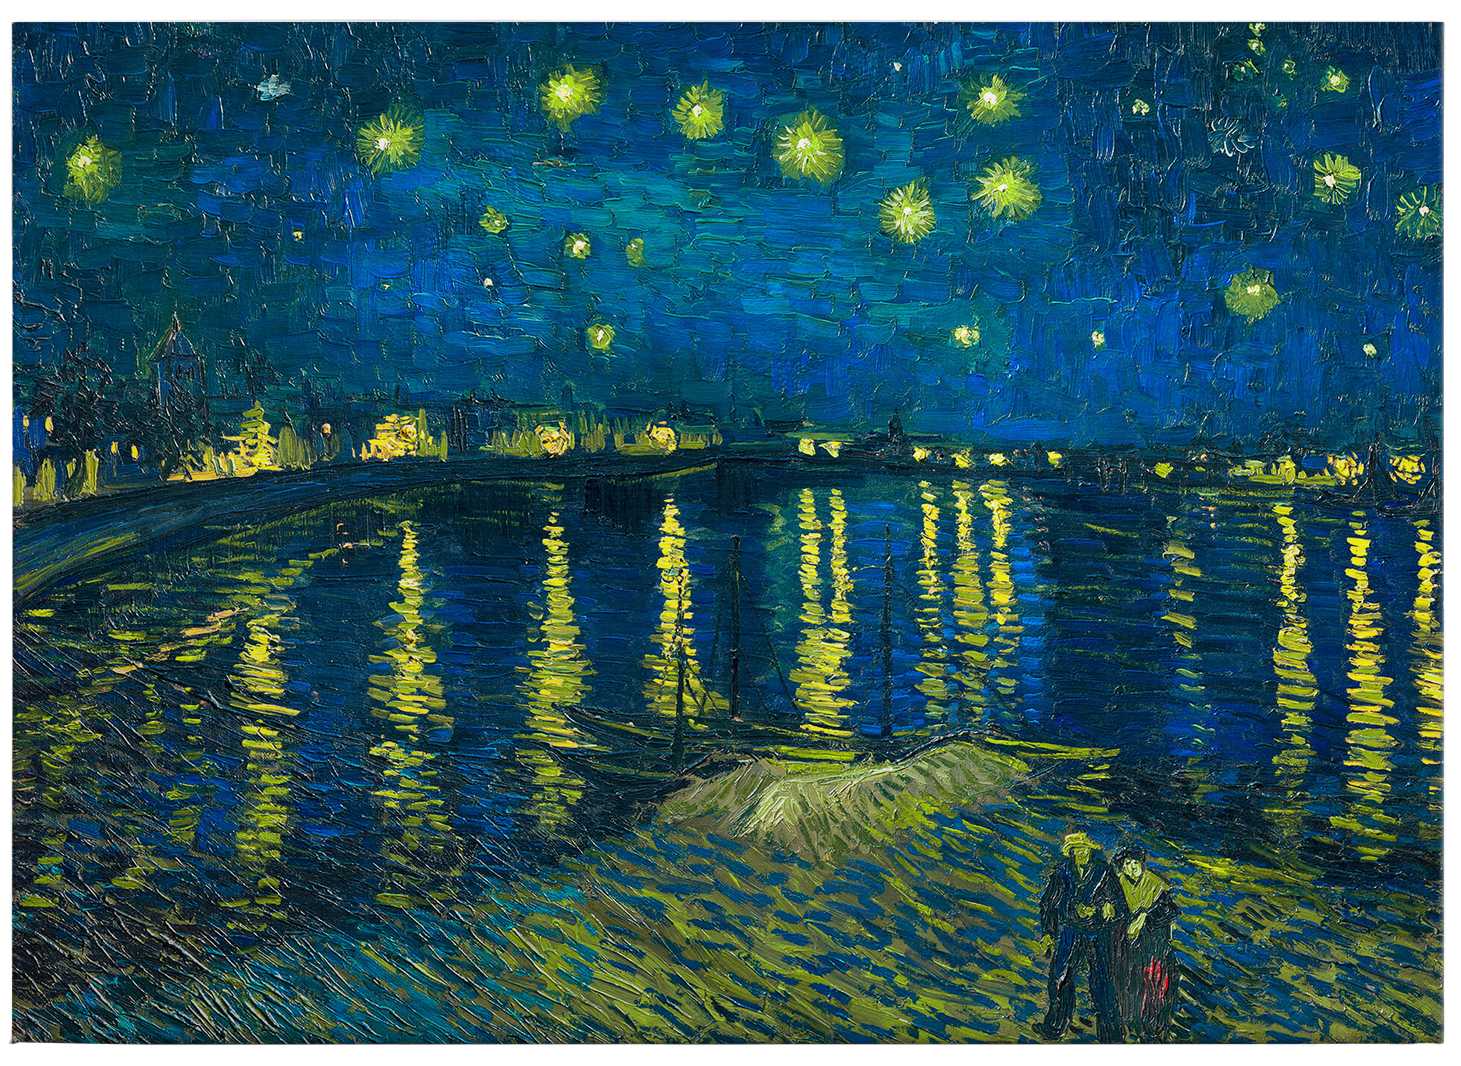             Canvas schilderij "Sterrennacht" van Van Gogh - 0.70 m x 0.50 m
        